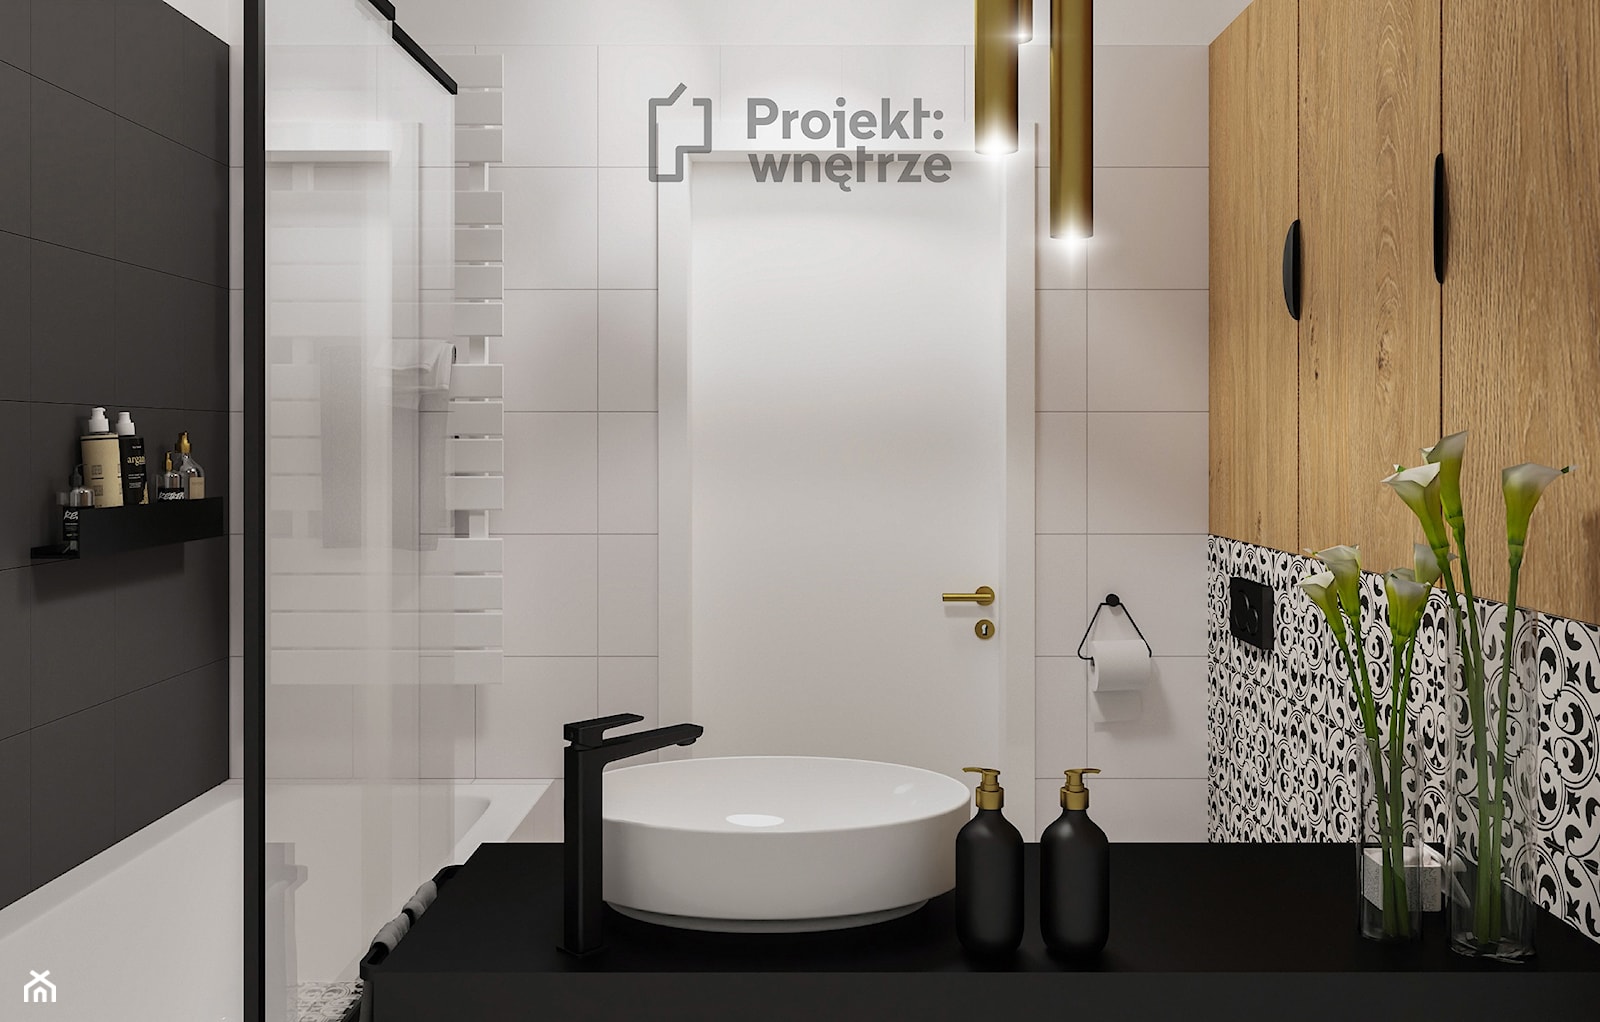 Mała łazienka WC bez okna z wanną oświetlenie ledowe drewniane płytki czarne okrągłe lustro styl nowoczesny umywalka wpuszczana szafka wisząca oświetlenie punktowe PROJEKT: WNĘTRZE - zdjęcie od PROJEKT: WNĘTRZE - Homebook